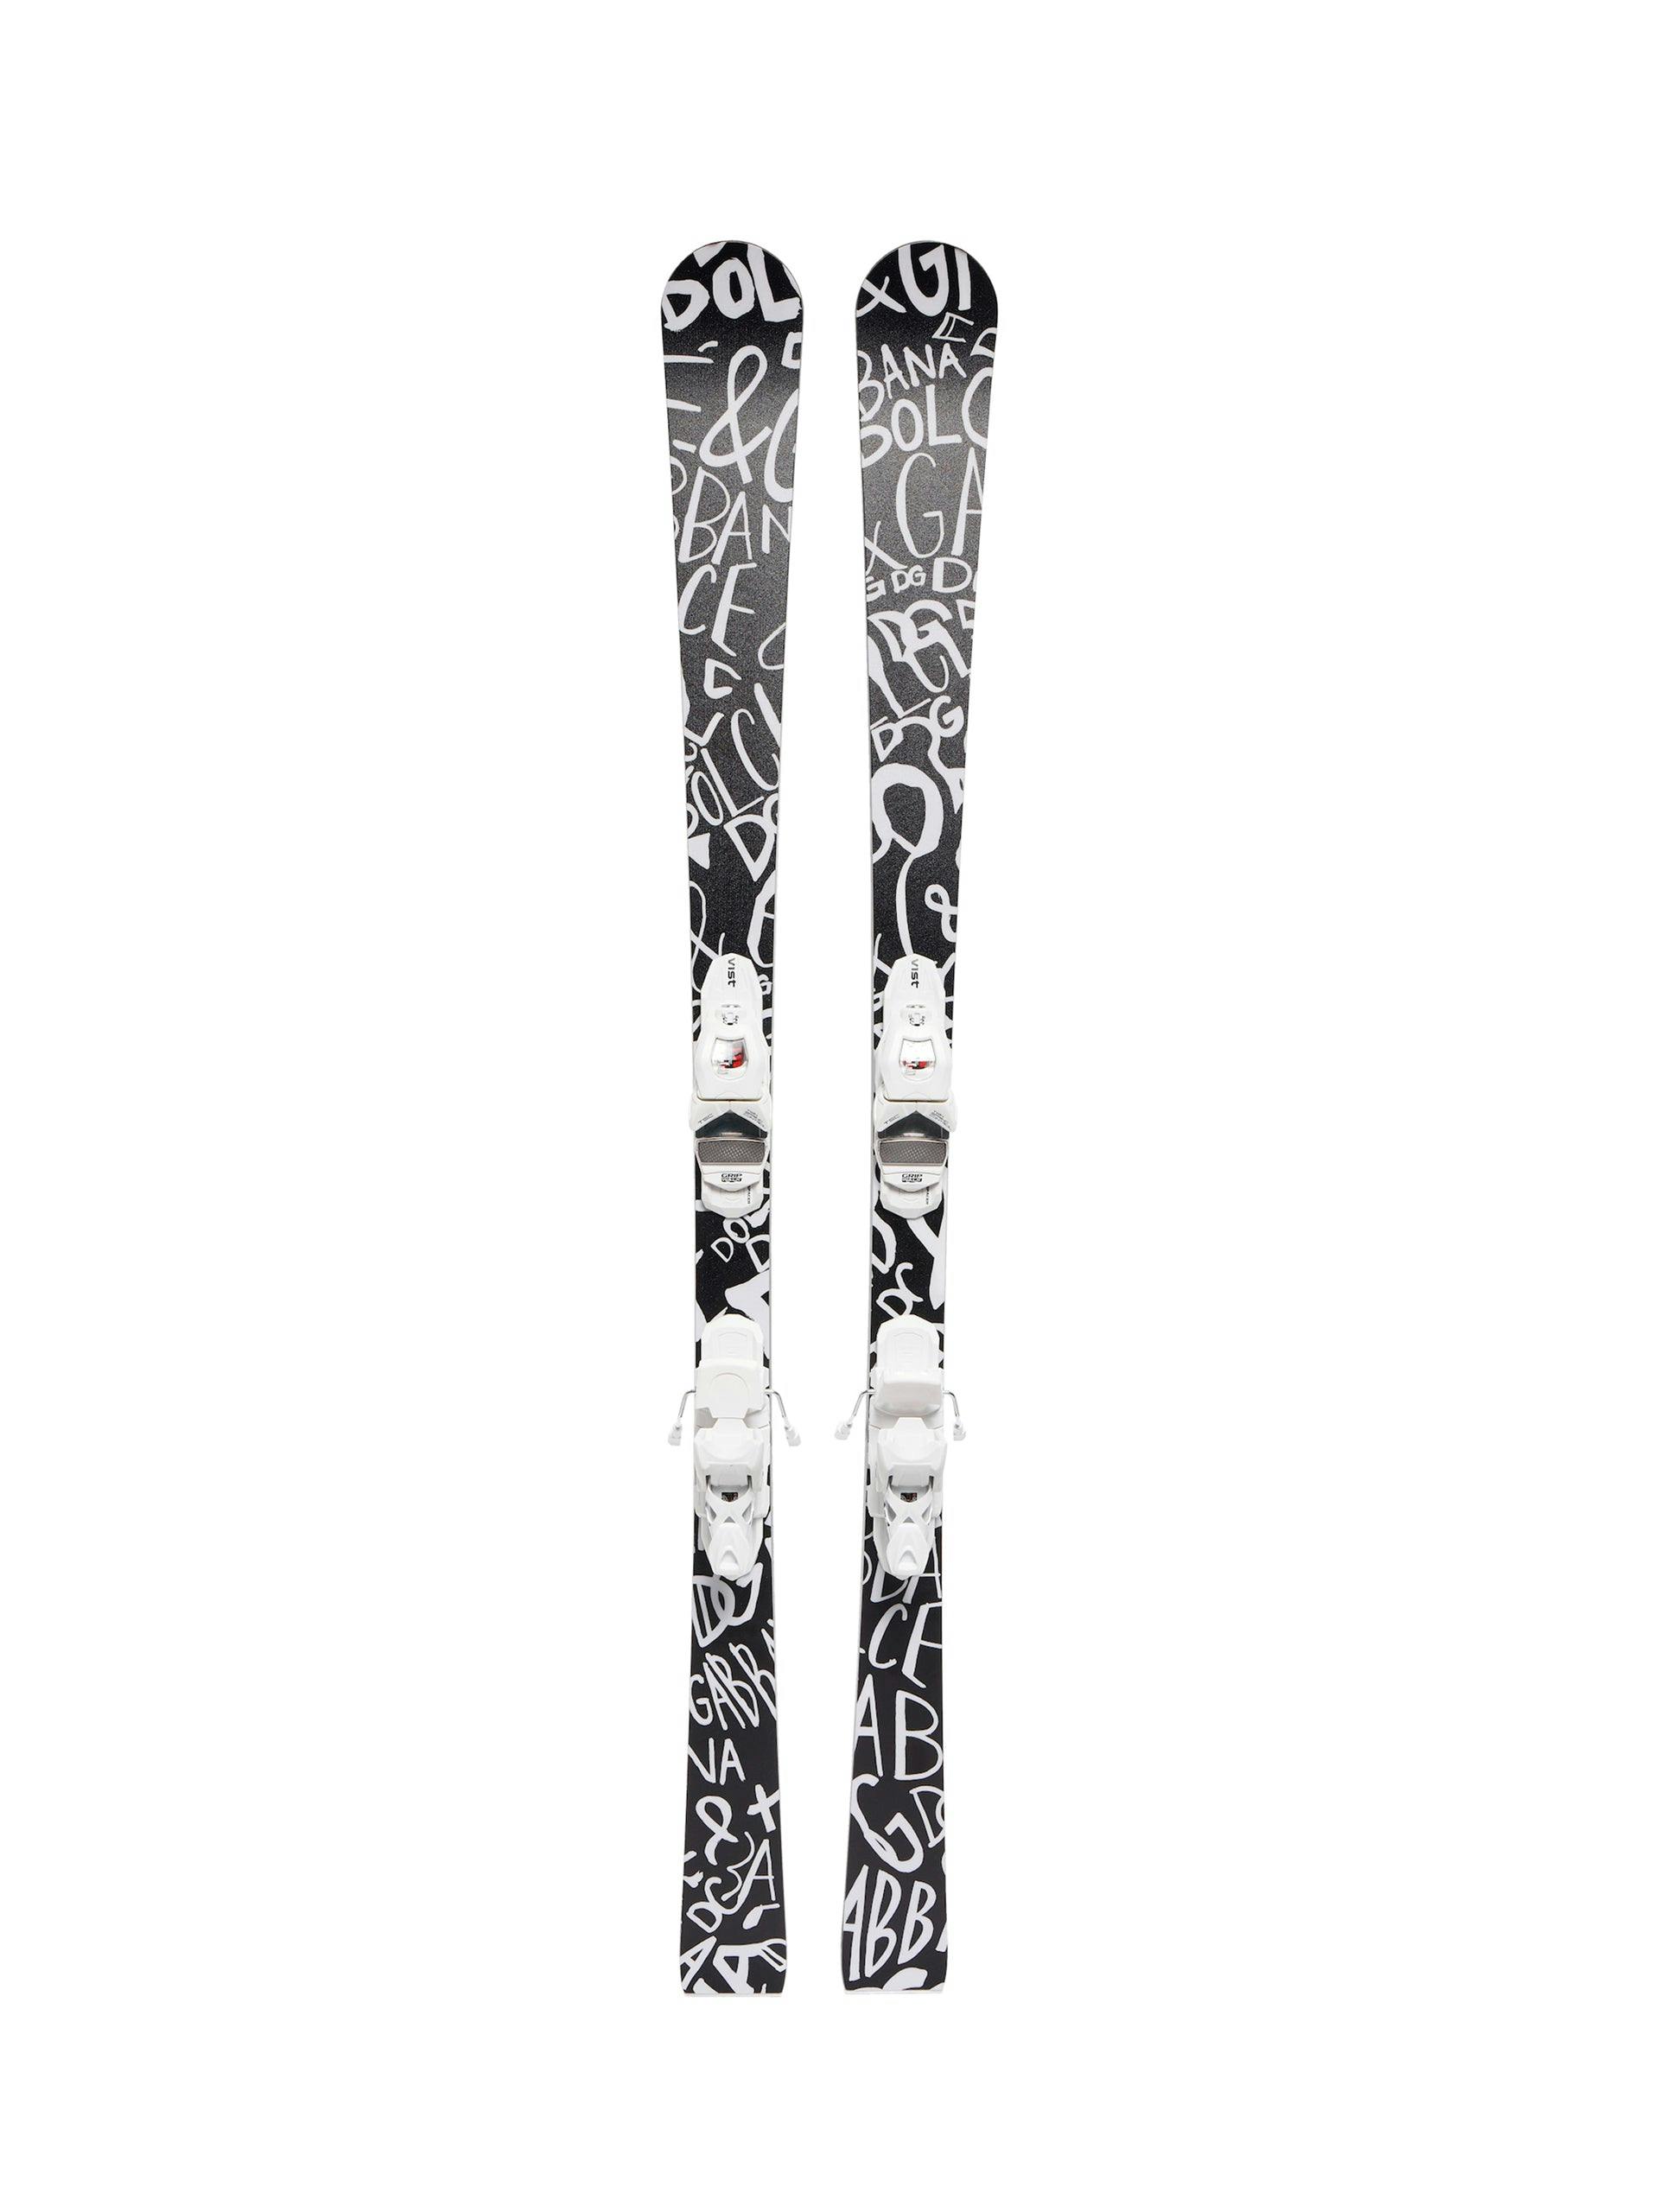 Black and white logo skis